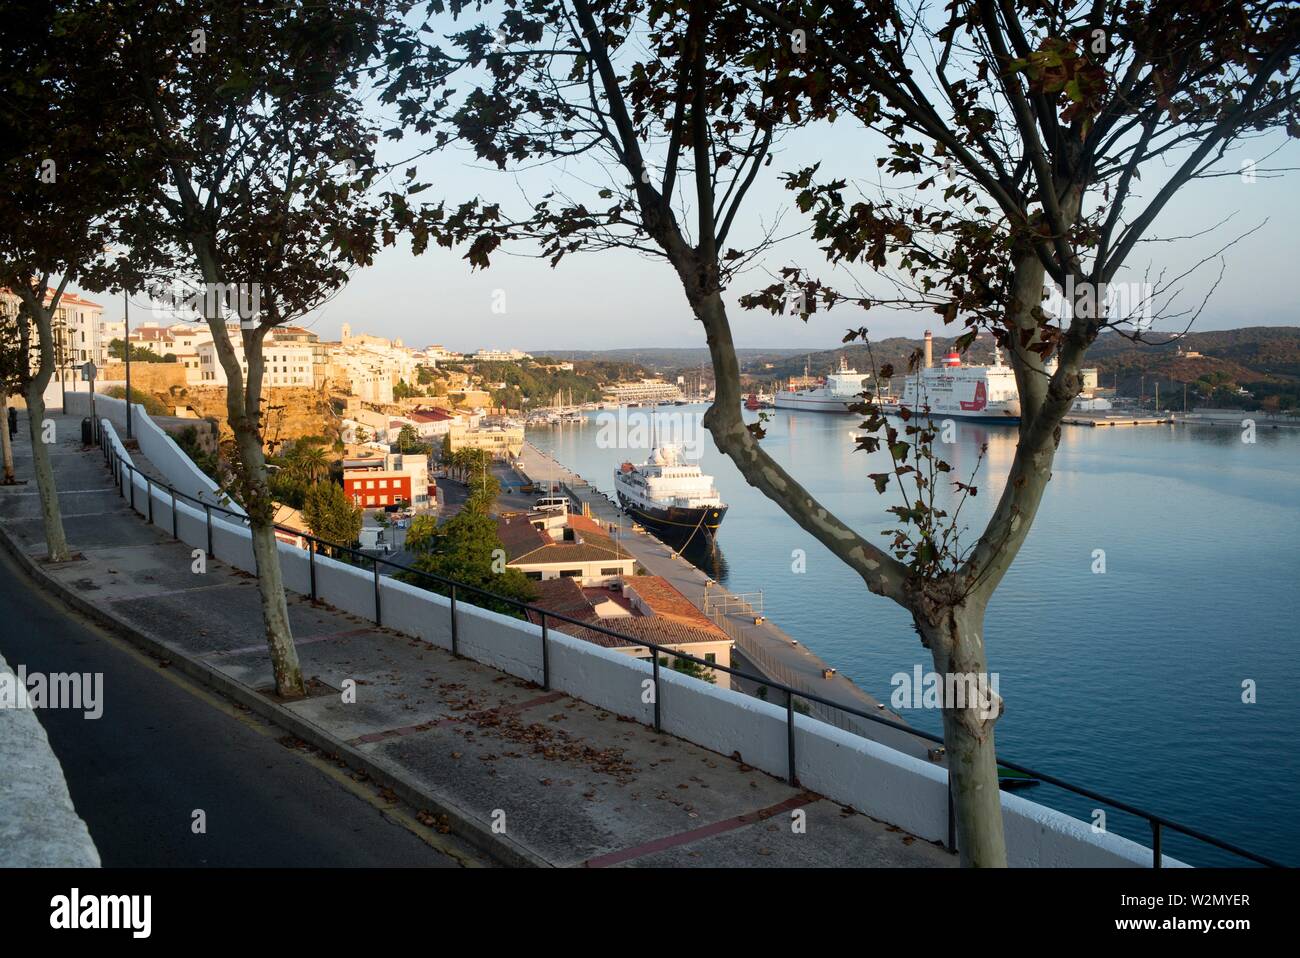 Blick auf den Hafen und die Stadt mit Bäumen im Vordergrund und ein Boot. Mahon Menorca, Balearen, Spanien, Europa. Stockfoto